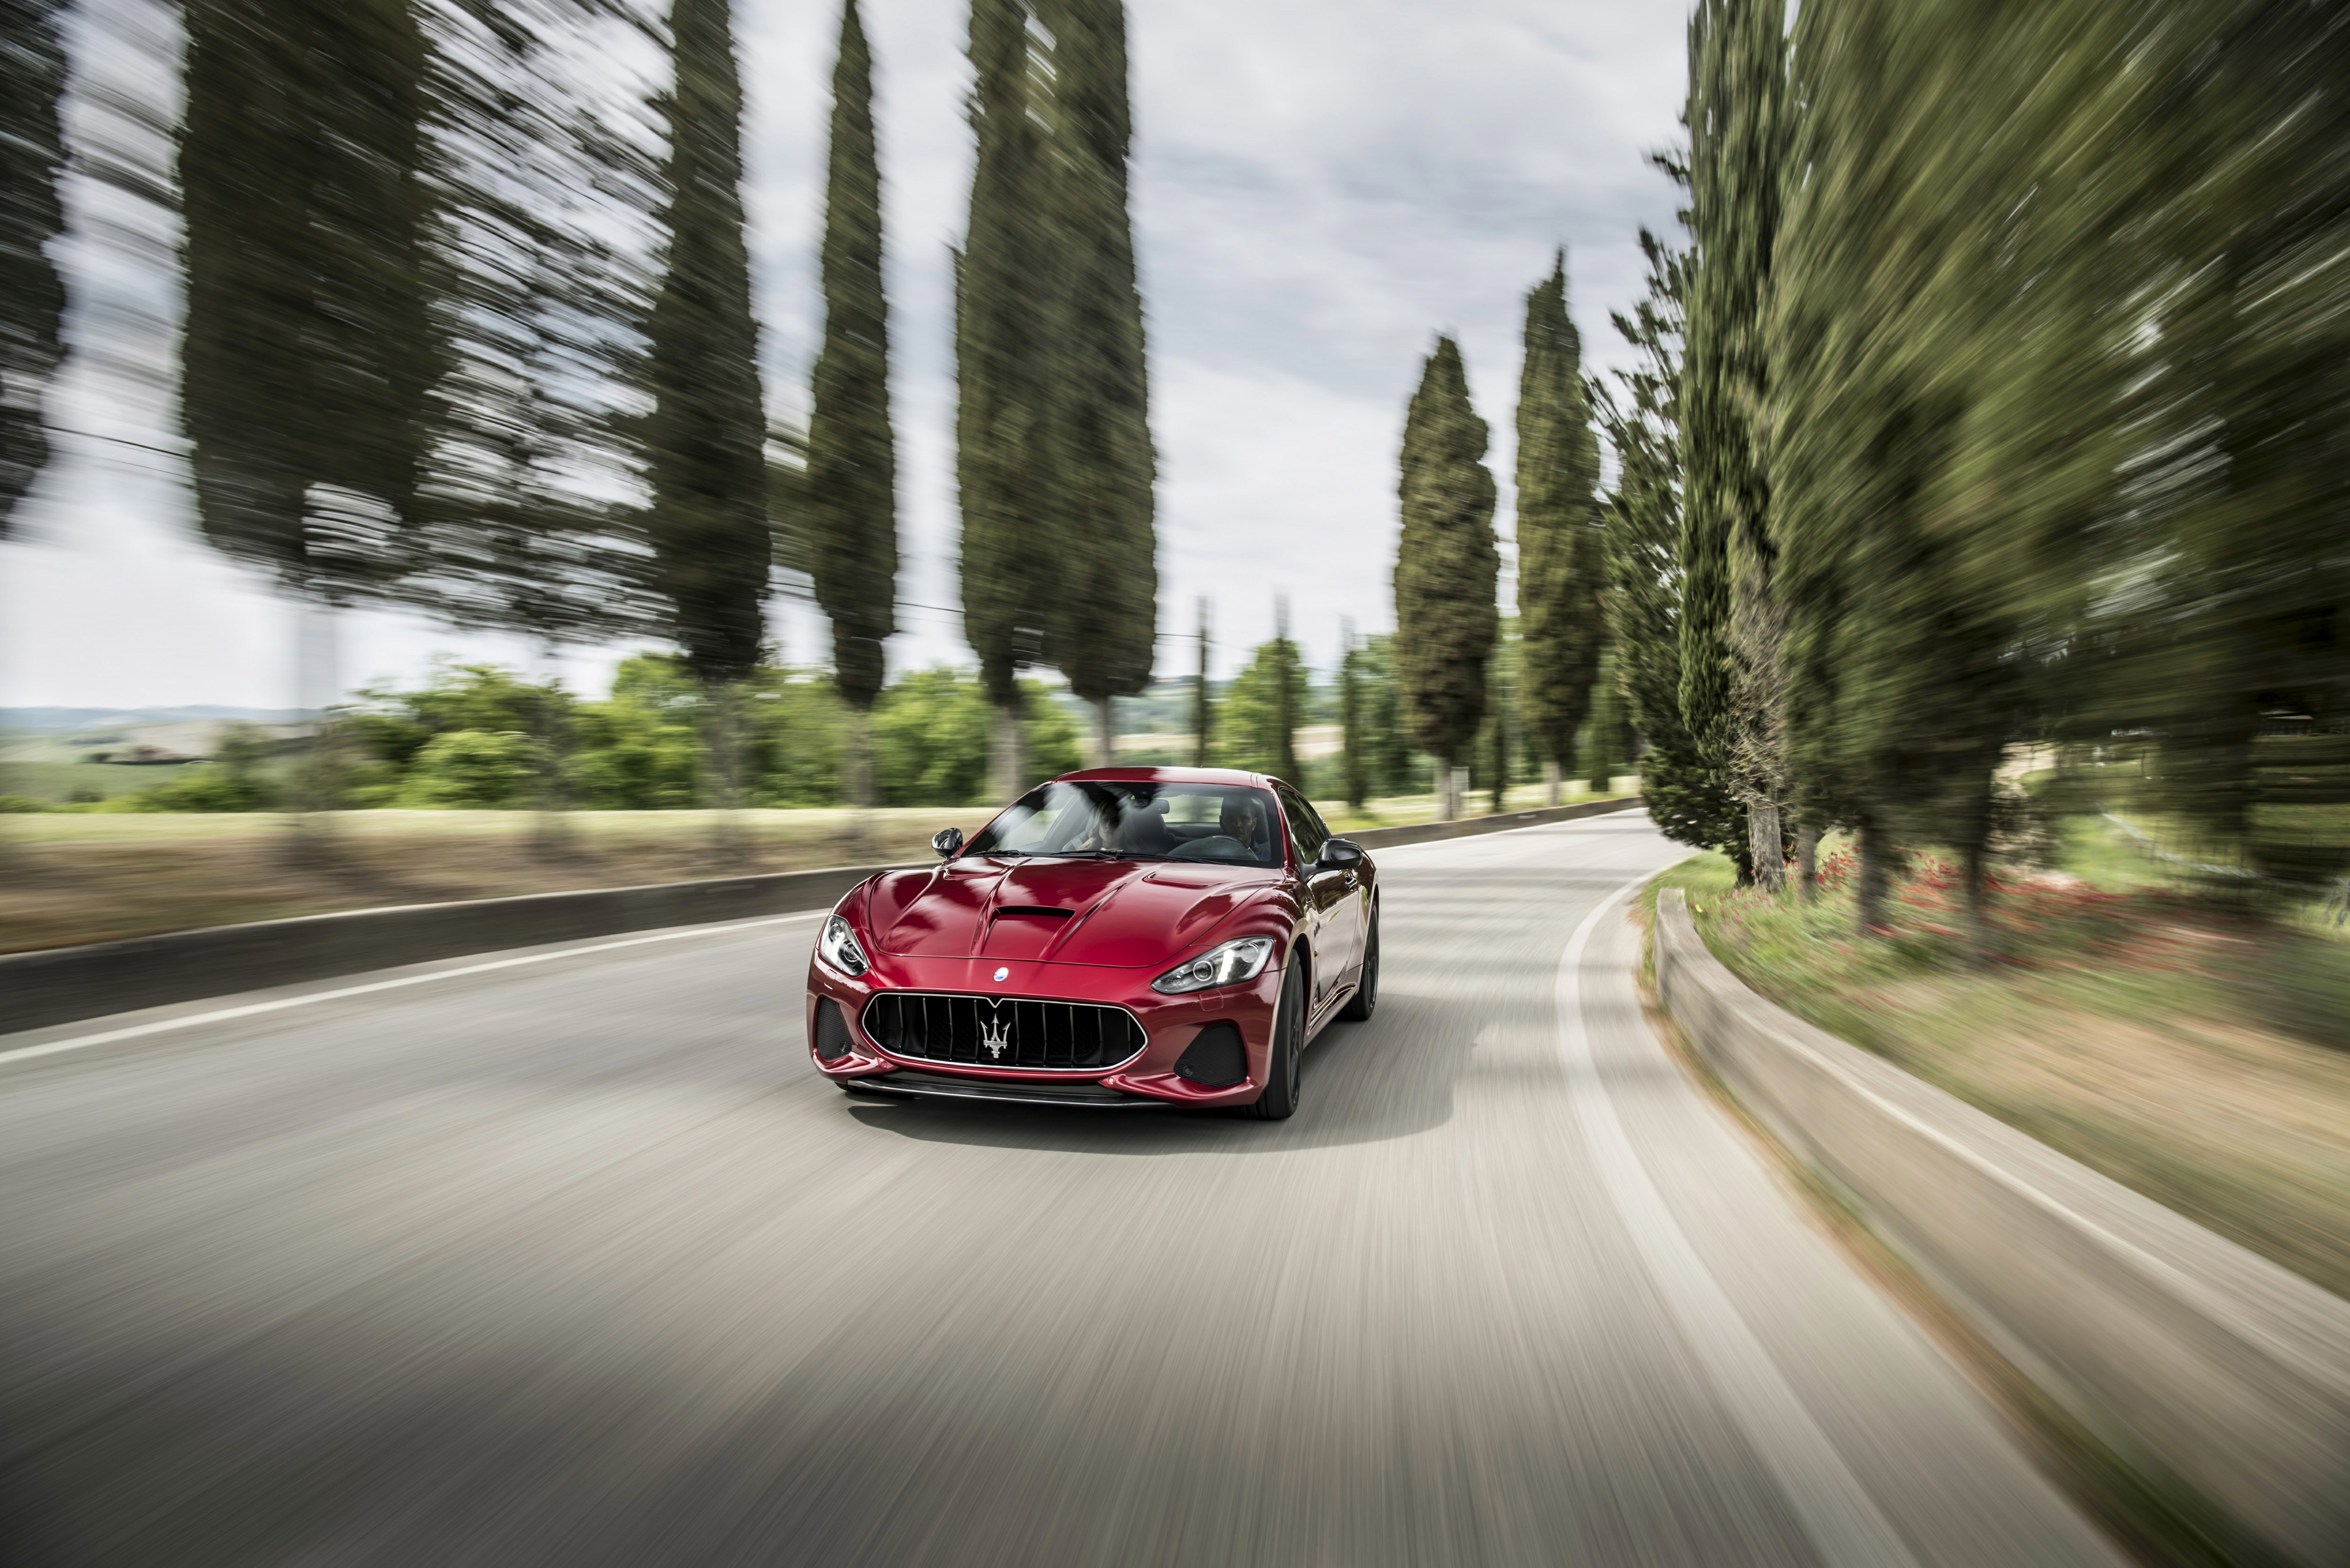 Maserati Granturismo 2018 , HD Wallpaper & Backgrounds